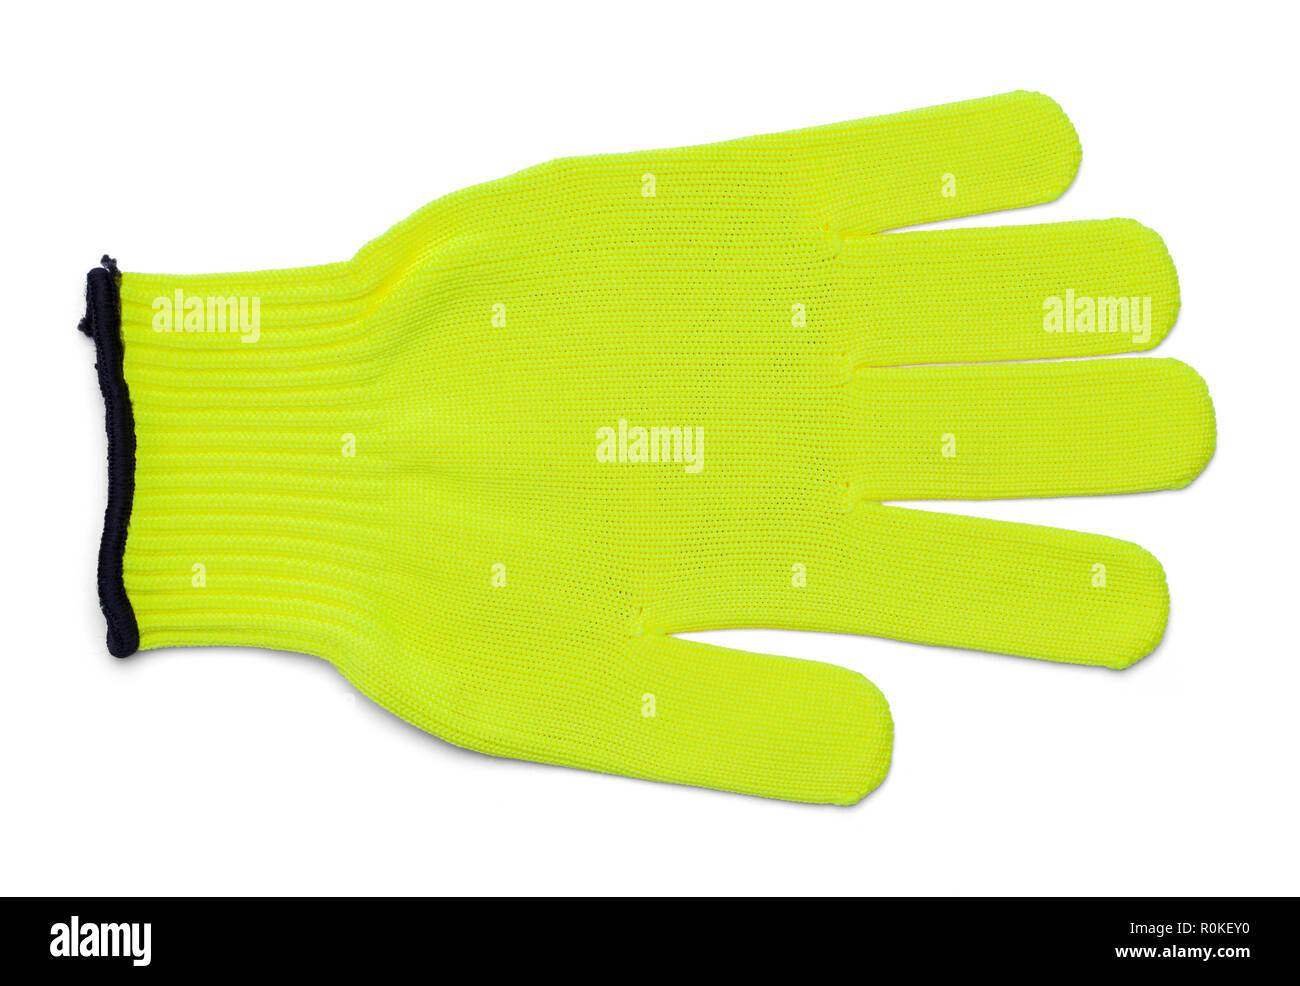 Single Fabric leuchtend gelben Handschuh isoliert auf einem weißen Hintergrund. Stockfoto